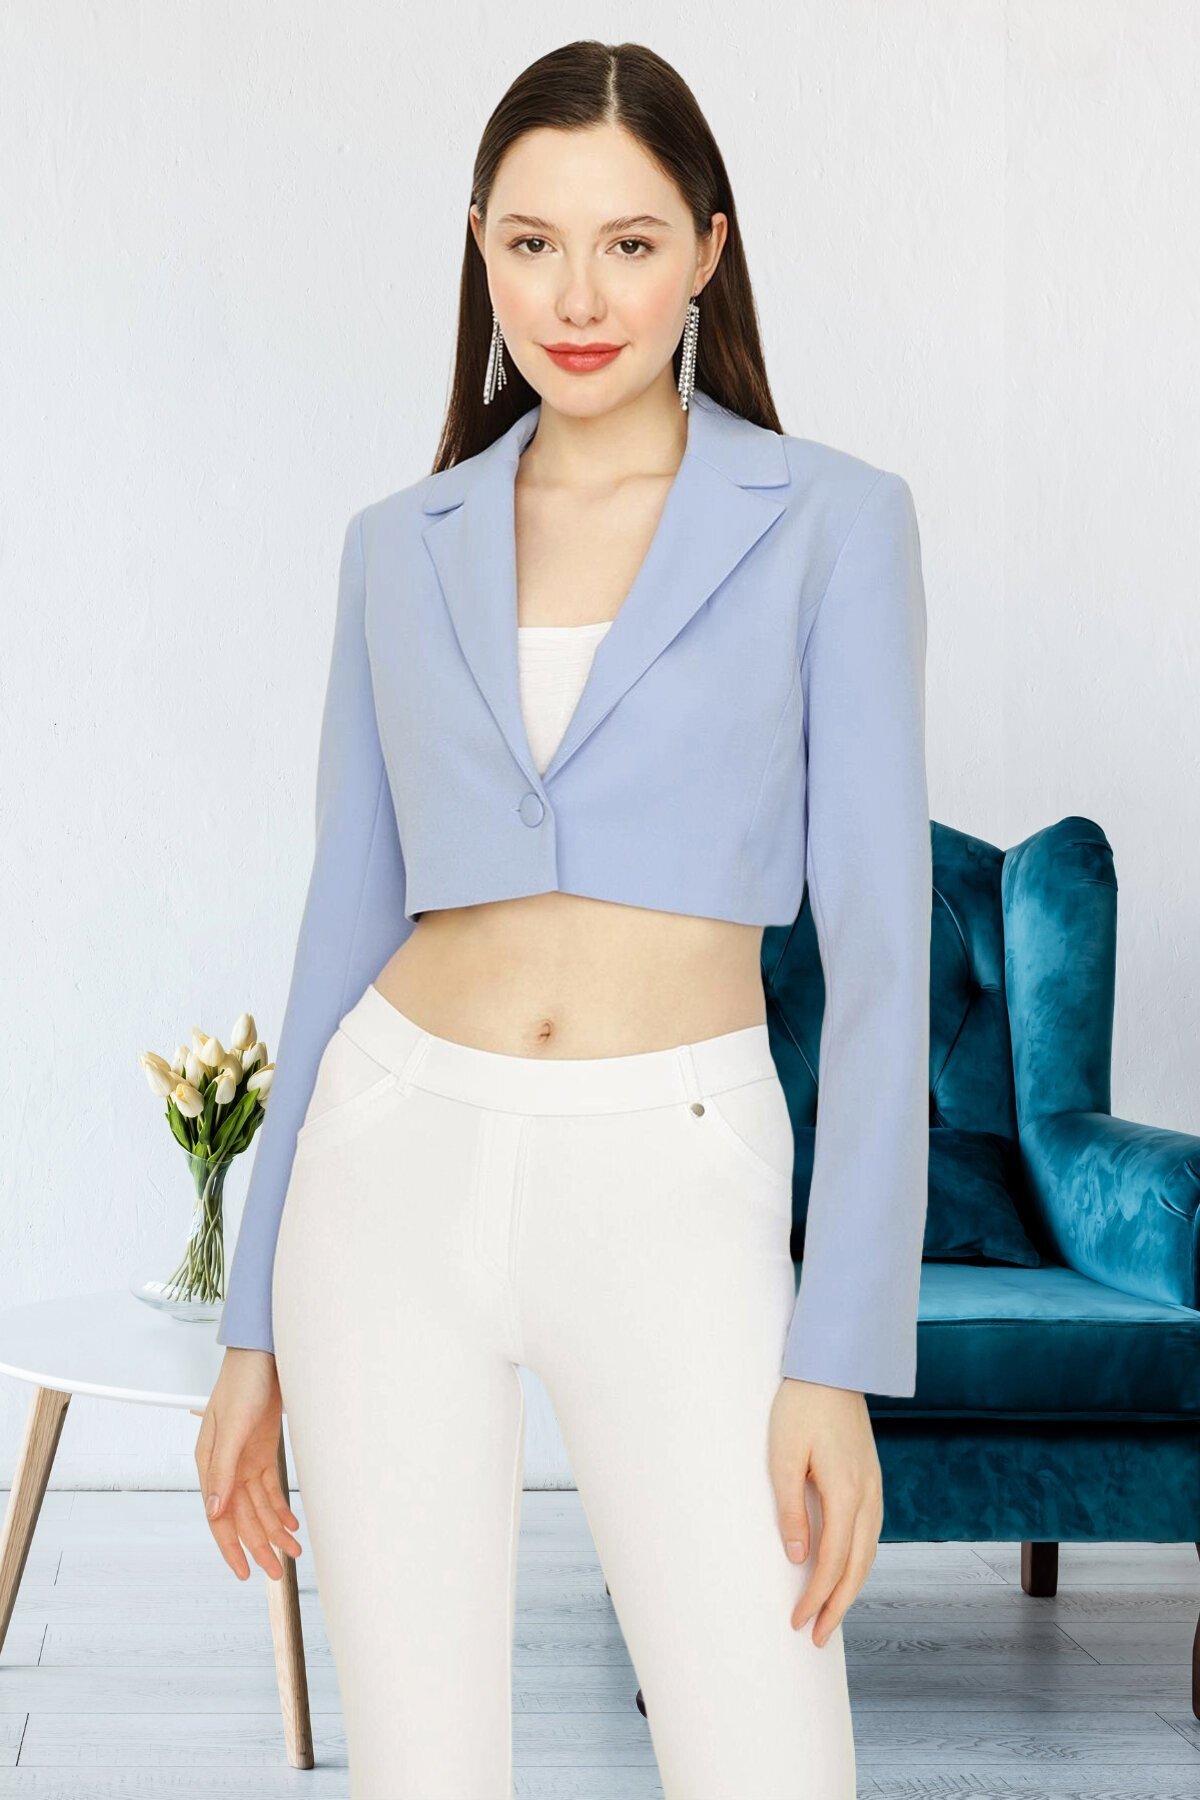 Select Moda Mavi Tek Düğme Kapamalı Crop Blazer Ceket